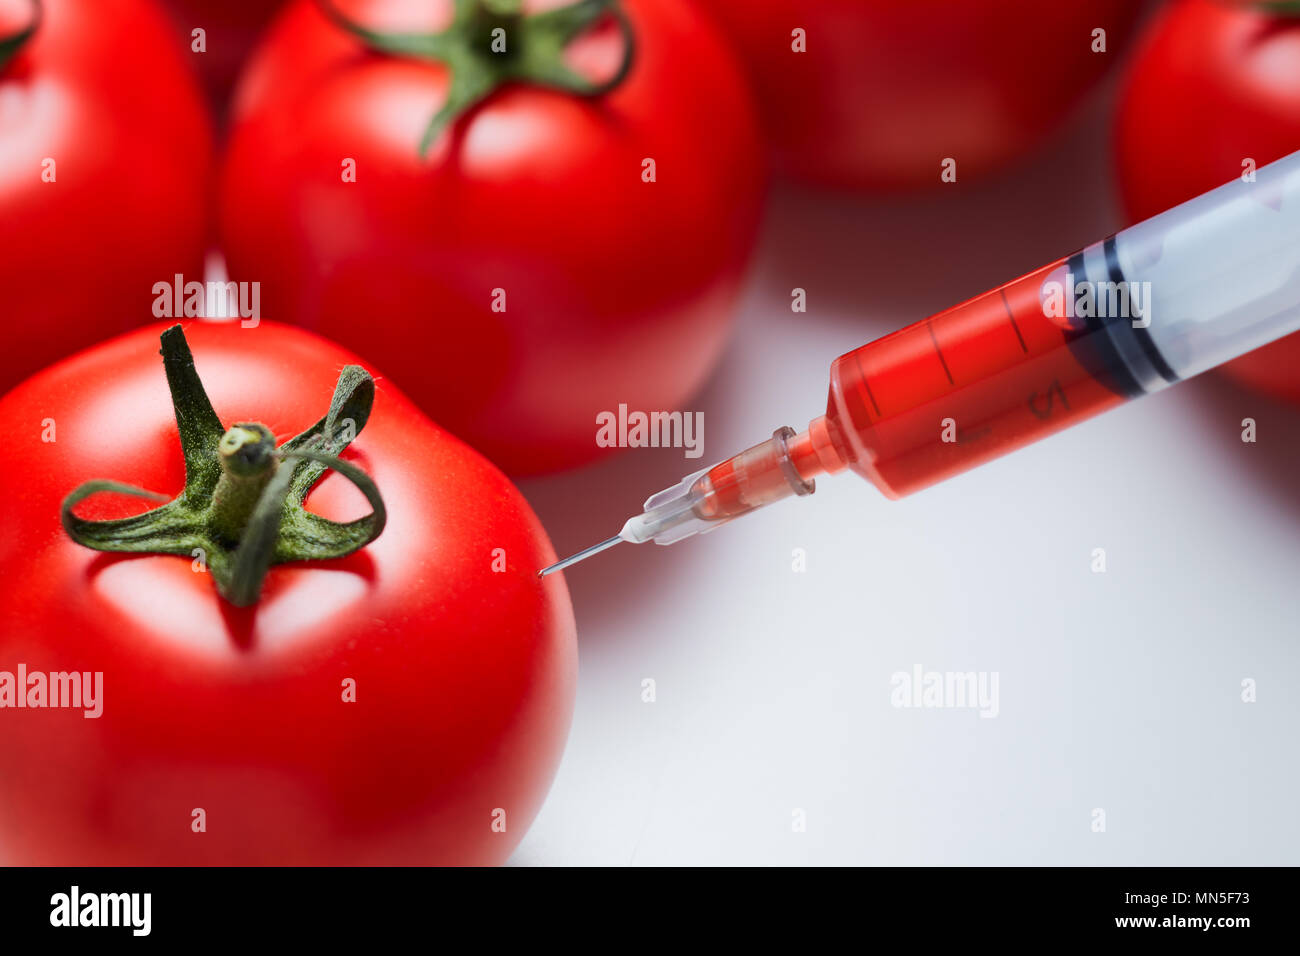 Nahaufnahme einer Spritze Injizieren einer roten Flüssigkeit an die frische rote Tomaten. Konzept der genetischen Modifikation. Stockfoto